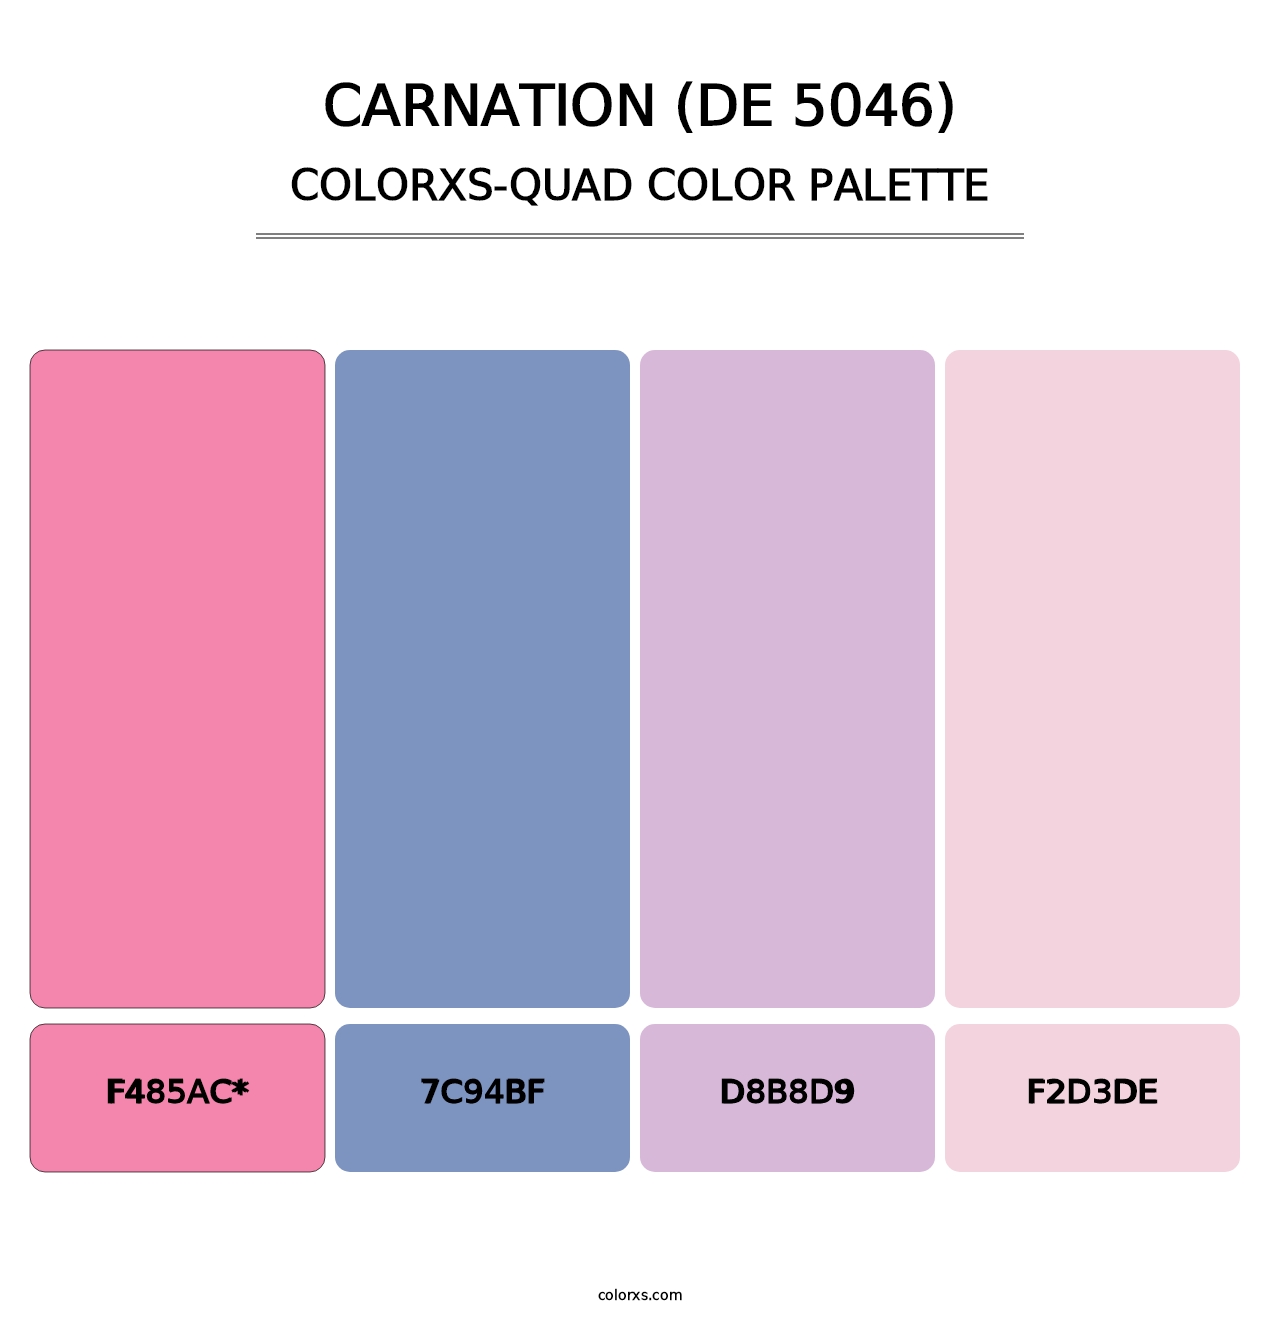 Carnation (DE 5046) - Colorxs Quad Palette